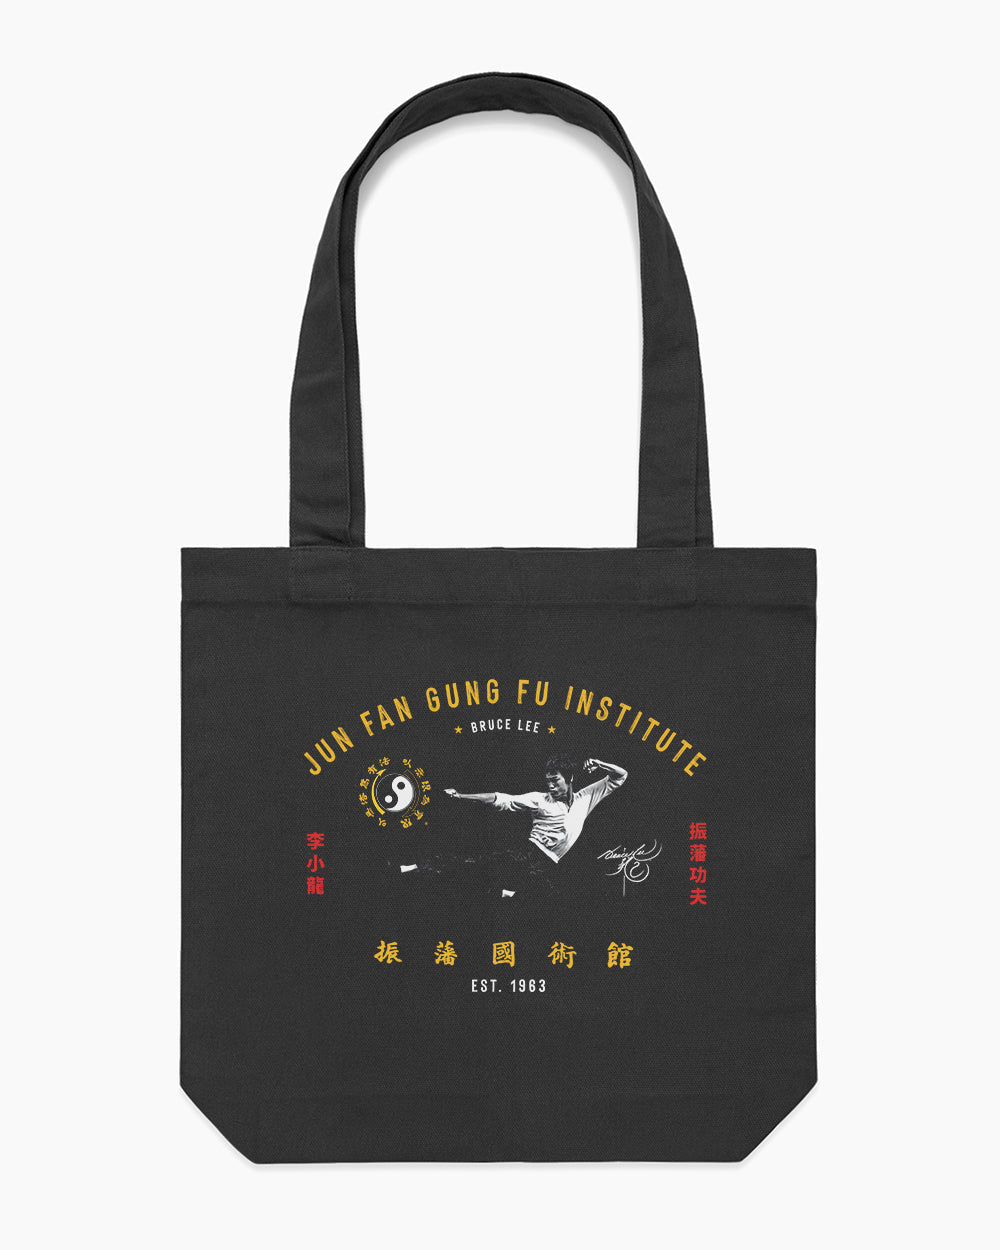 Jun Fan Gung Fu Institute Tote Bag Australia Online #colour_black